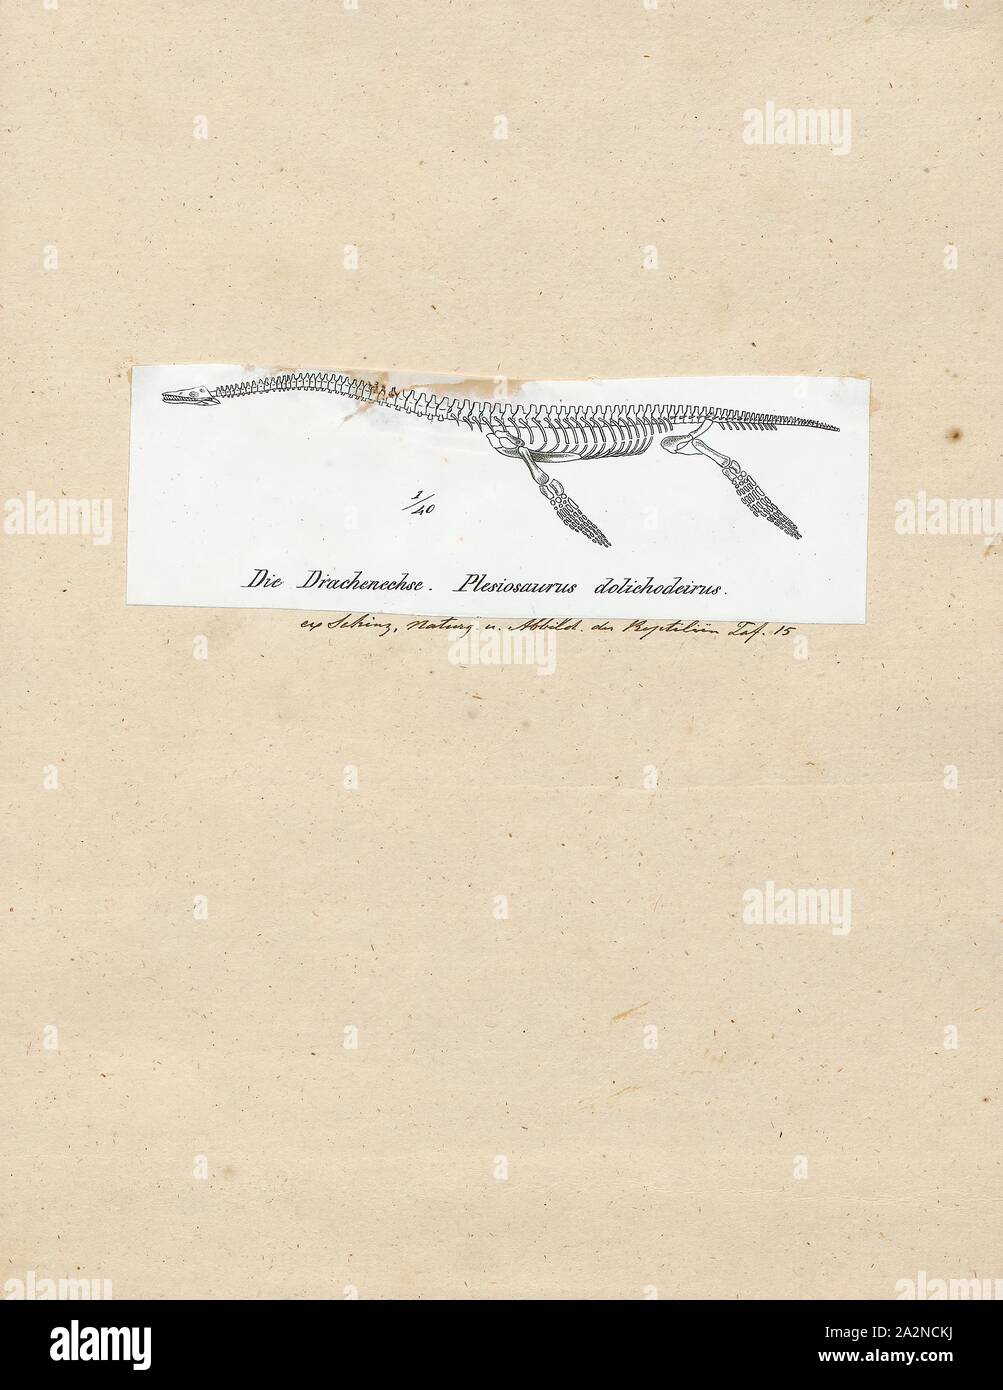 Plesiosaurus dolichodeirus, Imprimer, Plesiosaurus (Grec : πλησιος/plesios, près de  + σαυρος/sauros lézard,) est une espèce disparue, un grand reptile marin qui sauropterygian ont vécu durant la première partie de la période jurassique, et est connu par près de squelettes complets de la Lias de l'Angleterre. Il est reconnaissable à sa petite tête, cou long et mince, large turtle-comme corps, une queue courte, et deux paires de grandes, de forme allongée des pagaies. Il donne son nom à l'ordre Plesiosauria, dont elle est un début, mais assez typique. Il ne contient qu'une espèce, le Plesiosaurus dolichodeirus type, Banque D'Images